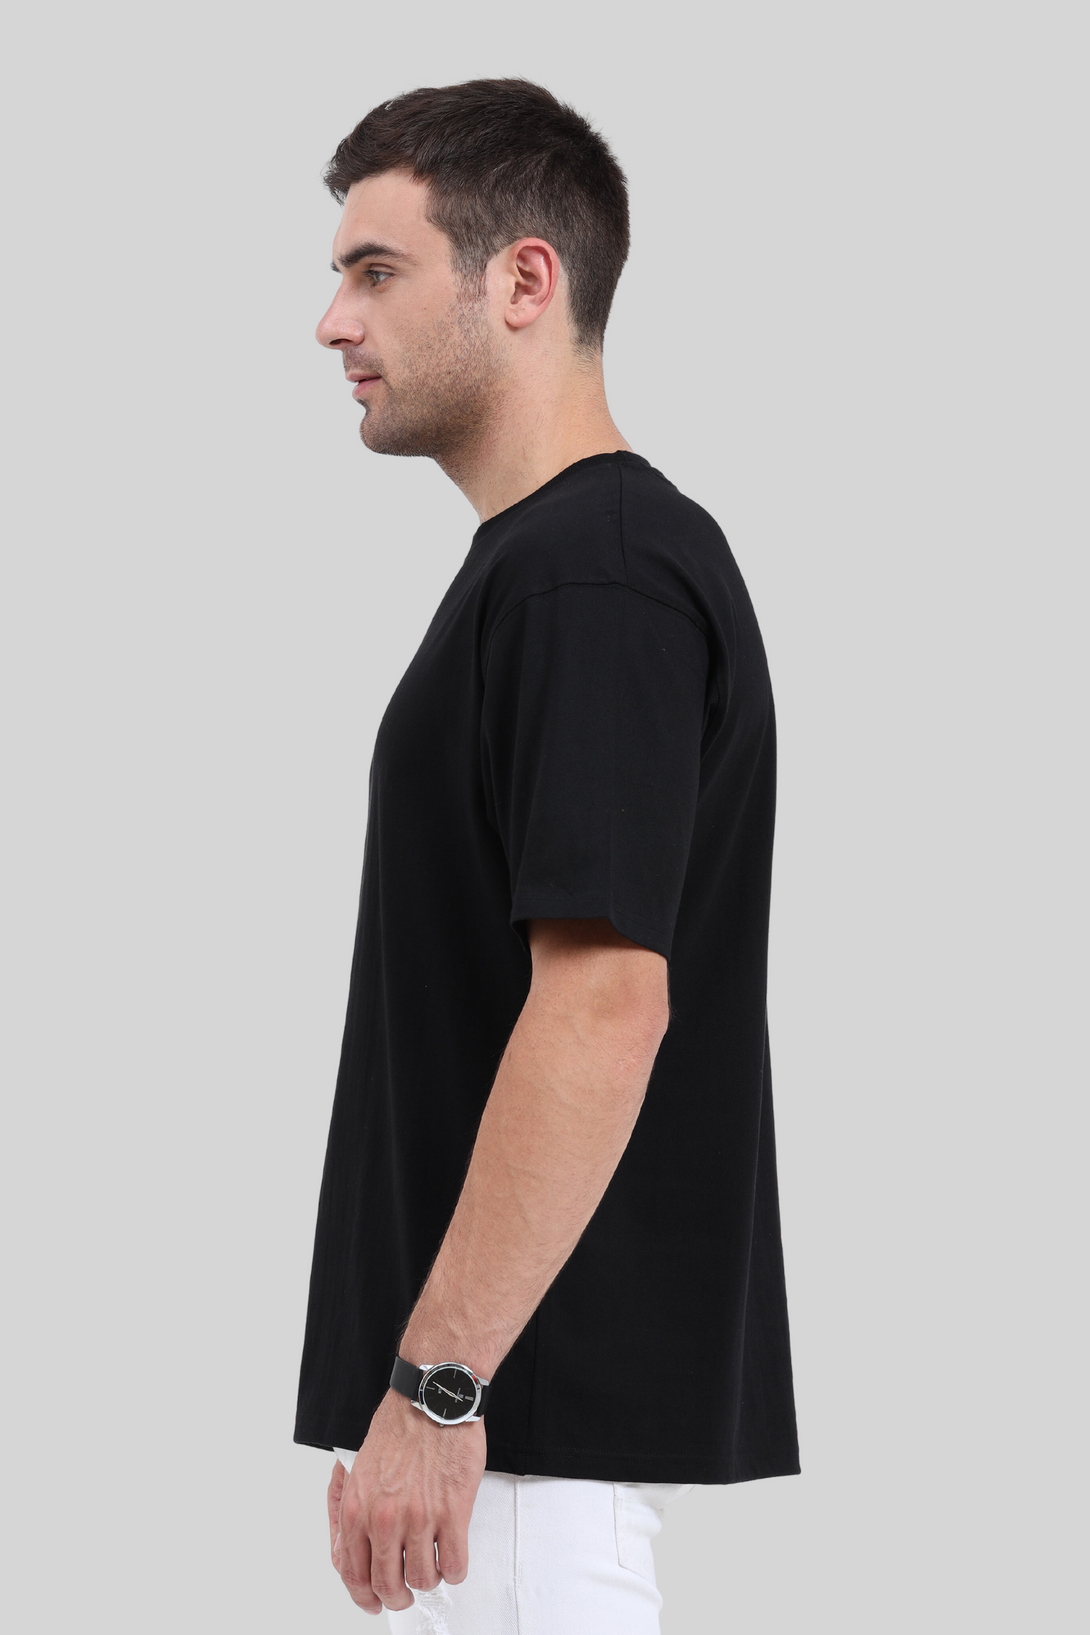 Black Oversized T-Shirt For Men - WowWaves - 5